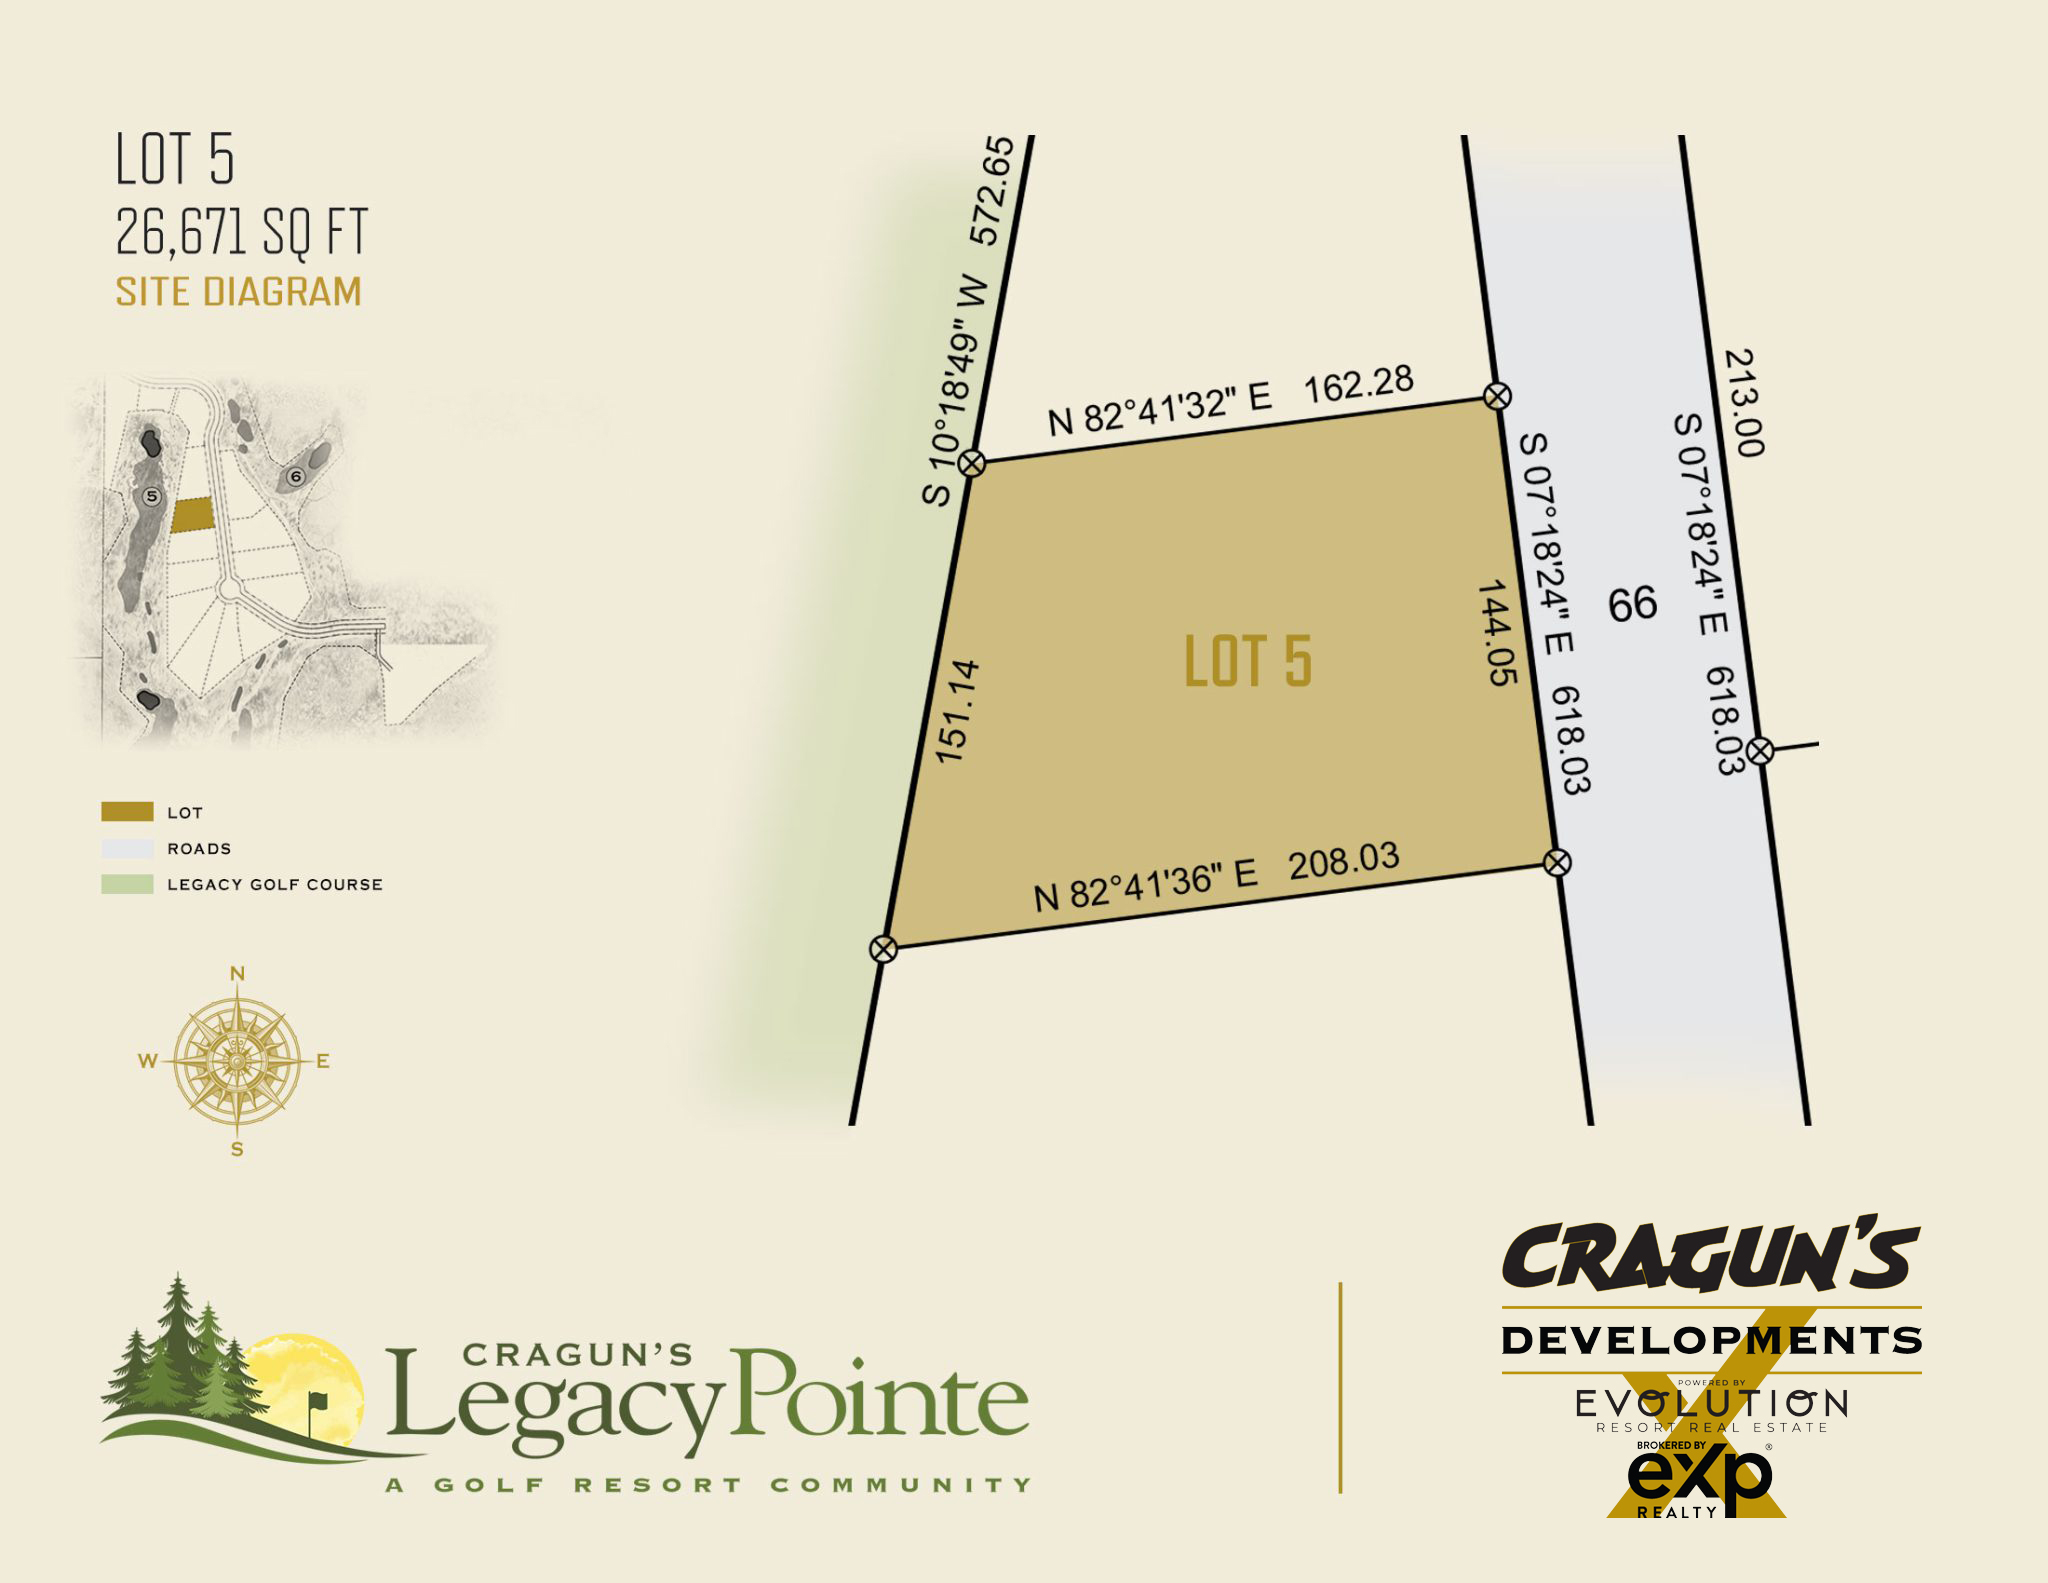 Legacy Pointe Lot 5 at Cragun's Developments in Brainerd, MN